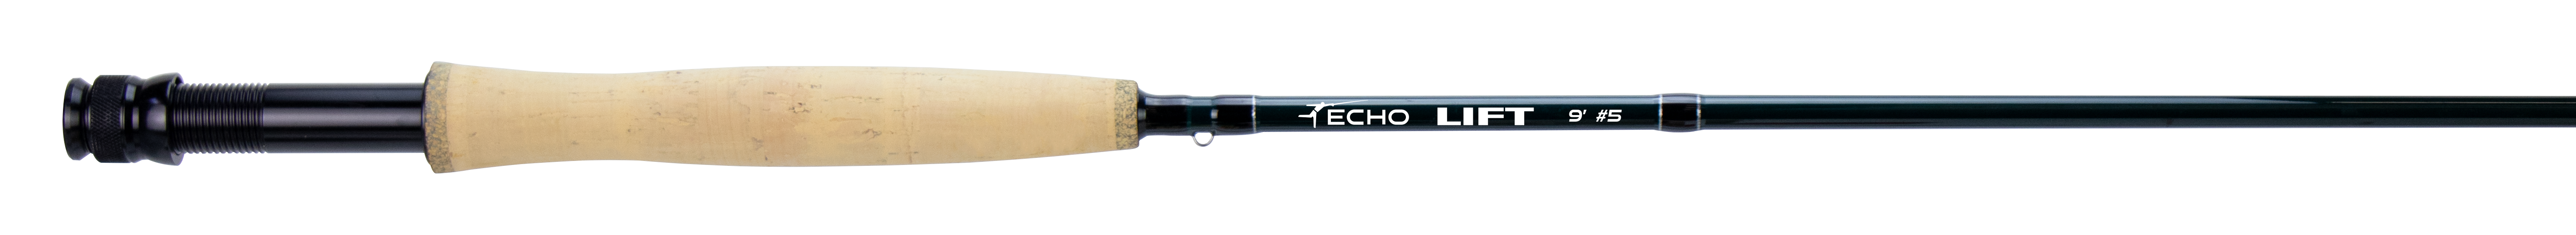 Echo Lift 9' #7 4pc Fly Rod